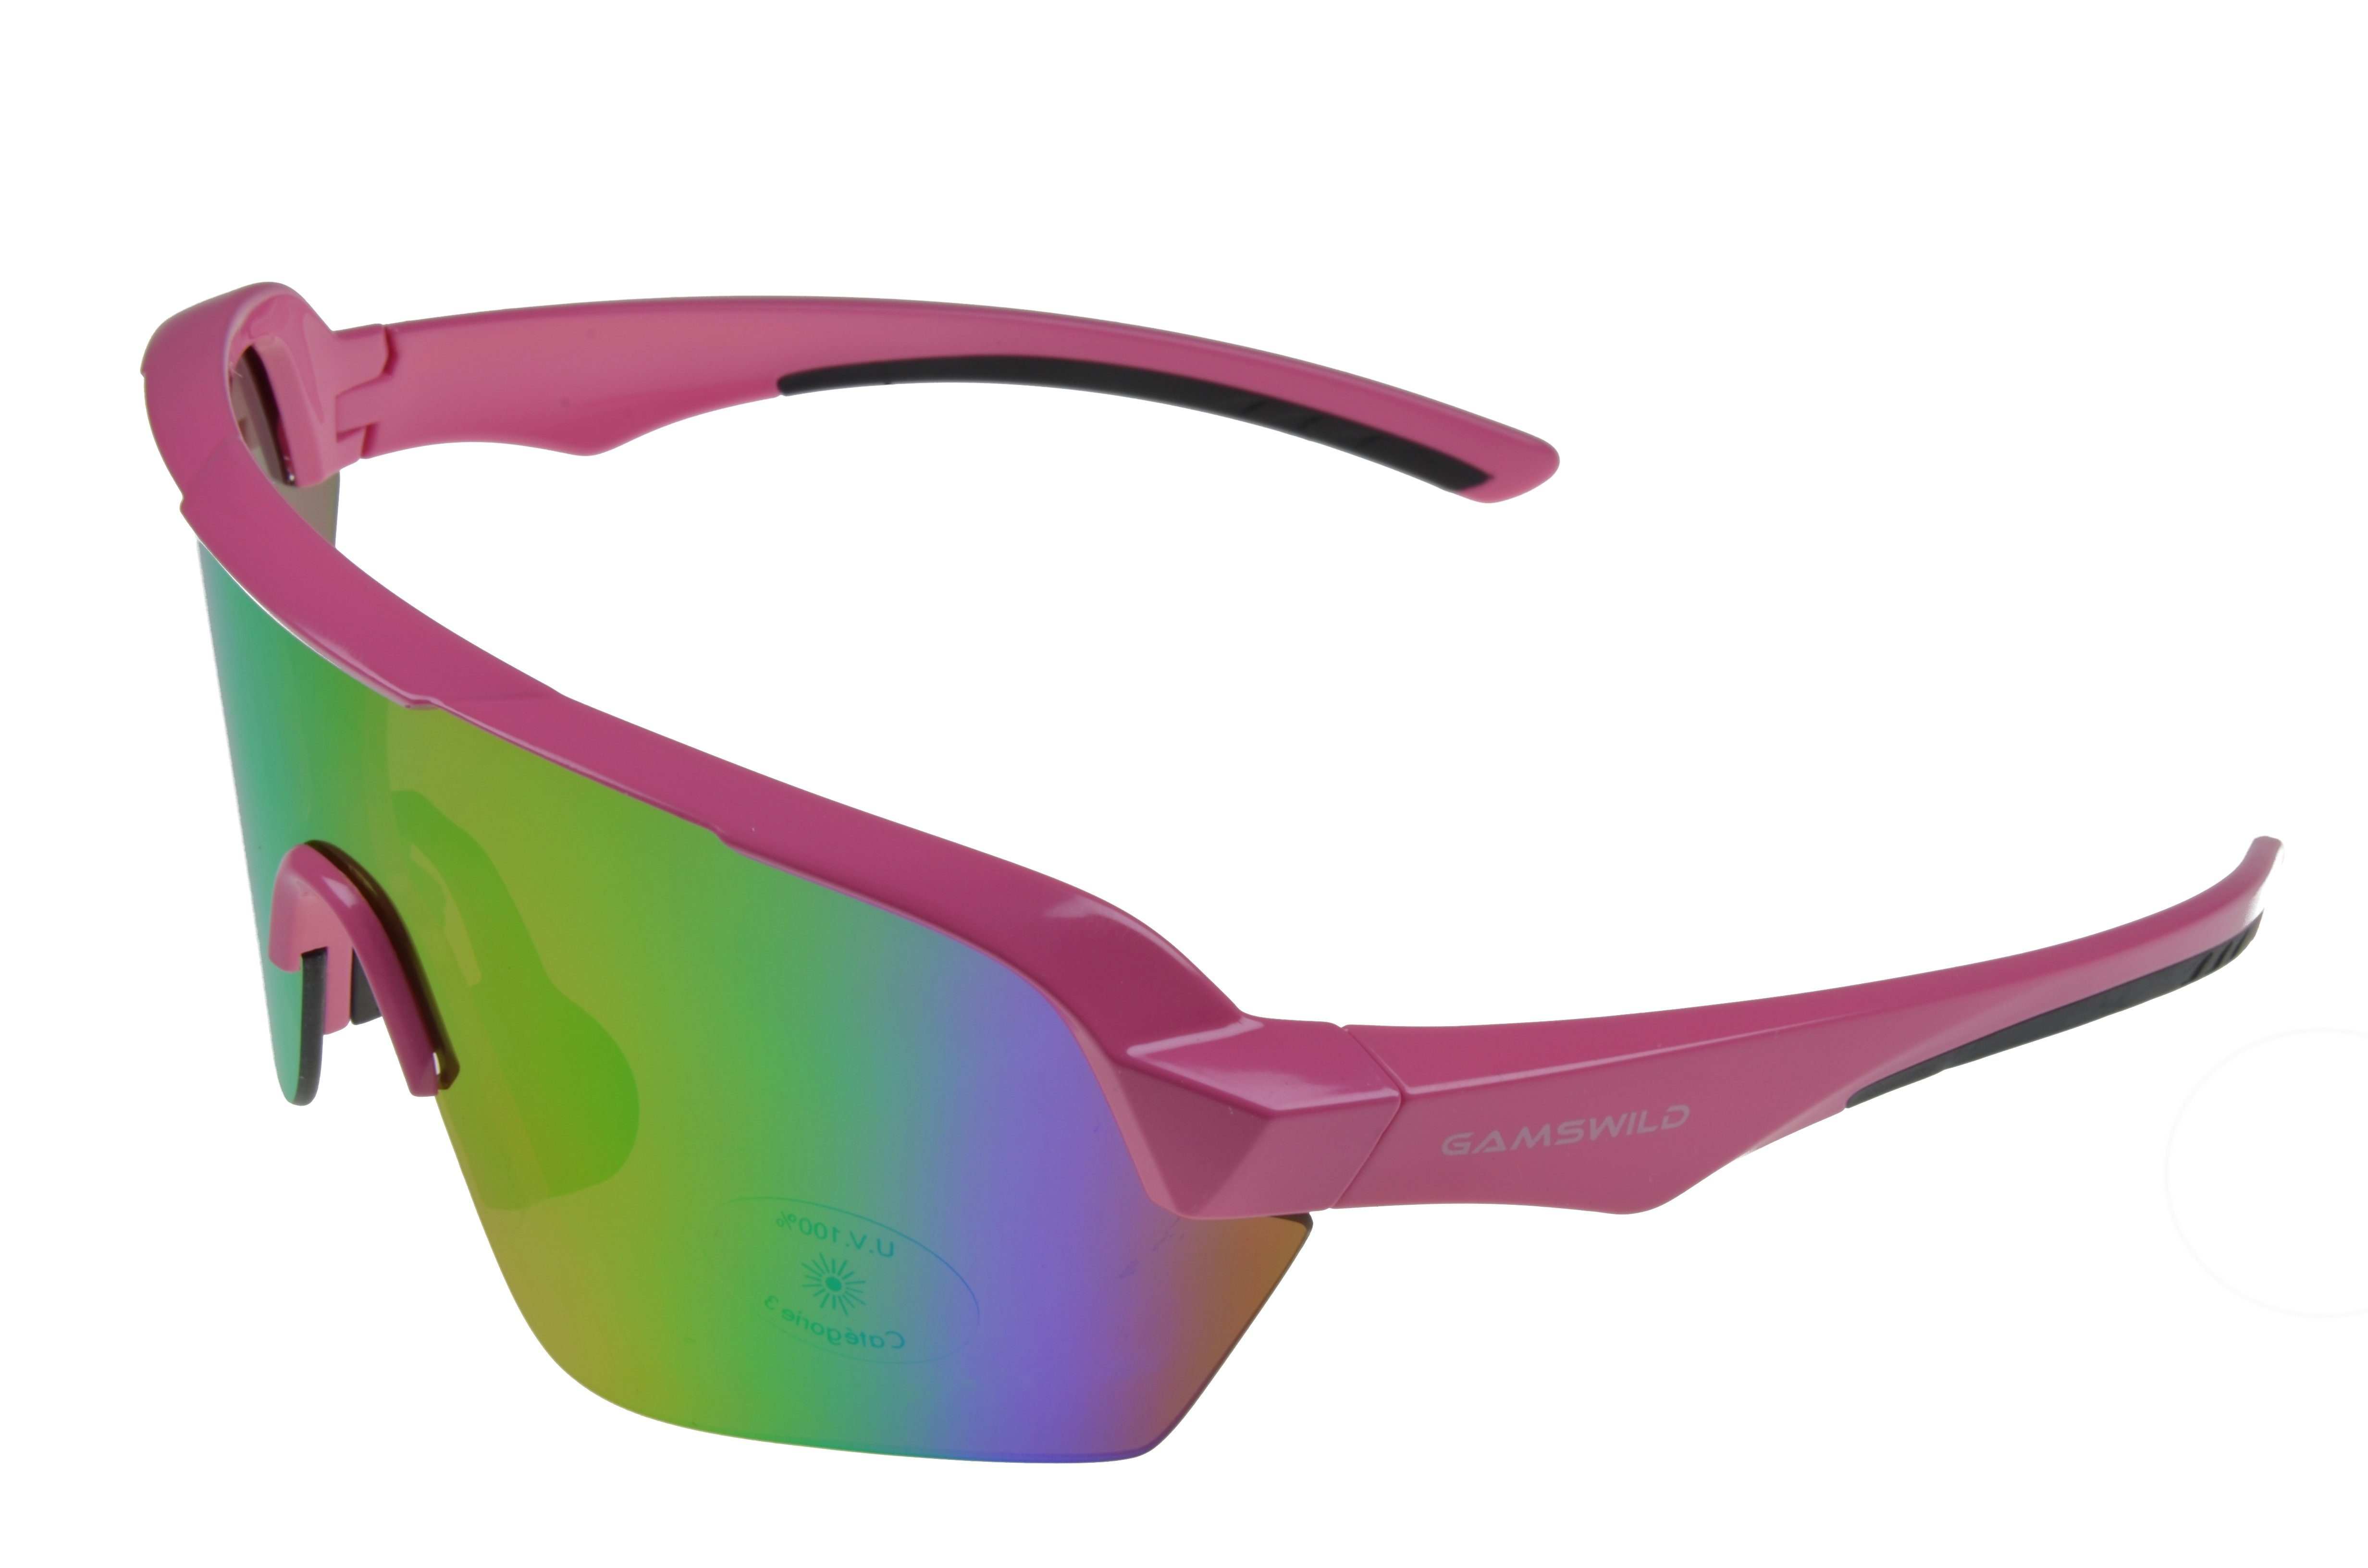 Gamswild Sportbrille »WS7136 Sonnenbrille Fahrradbrille Skibrille Damen  Herren Unisex, pink, mintgrün, schwarz«, extra große Scheibe online kaufen  | OTTO